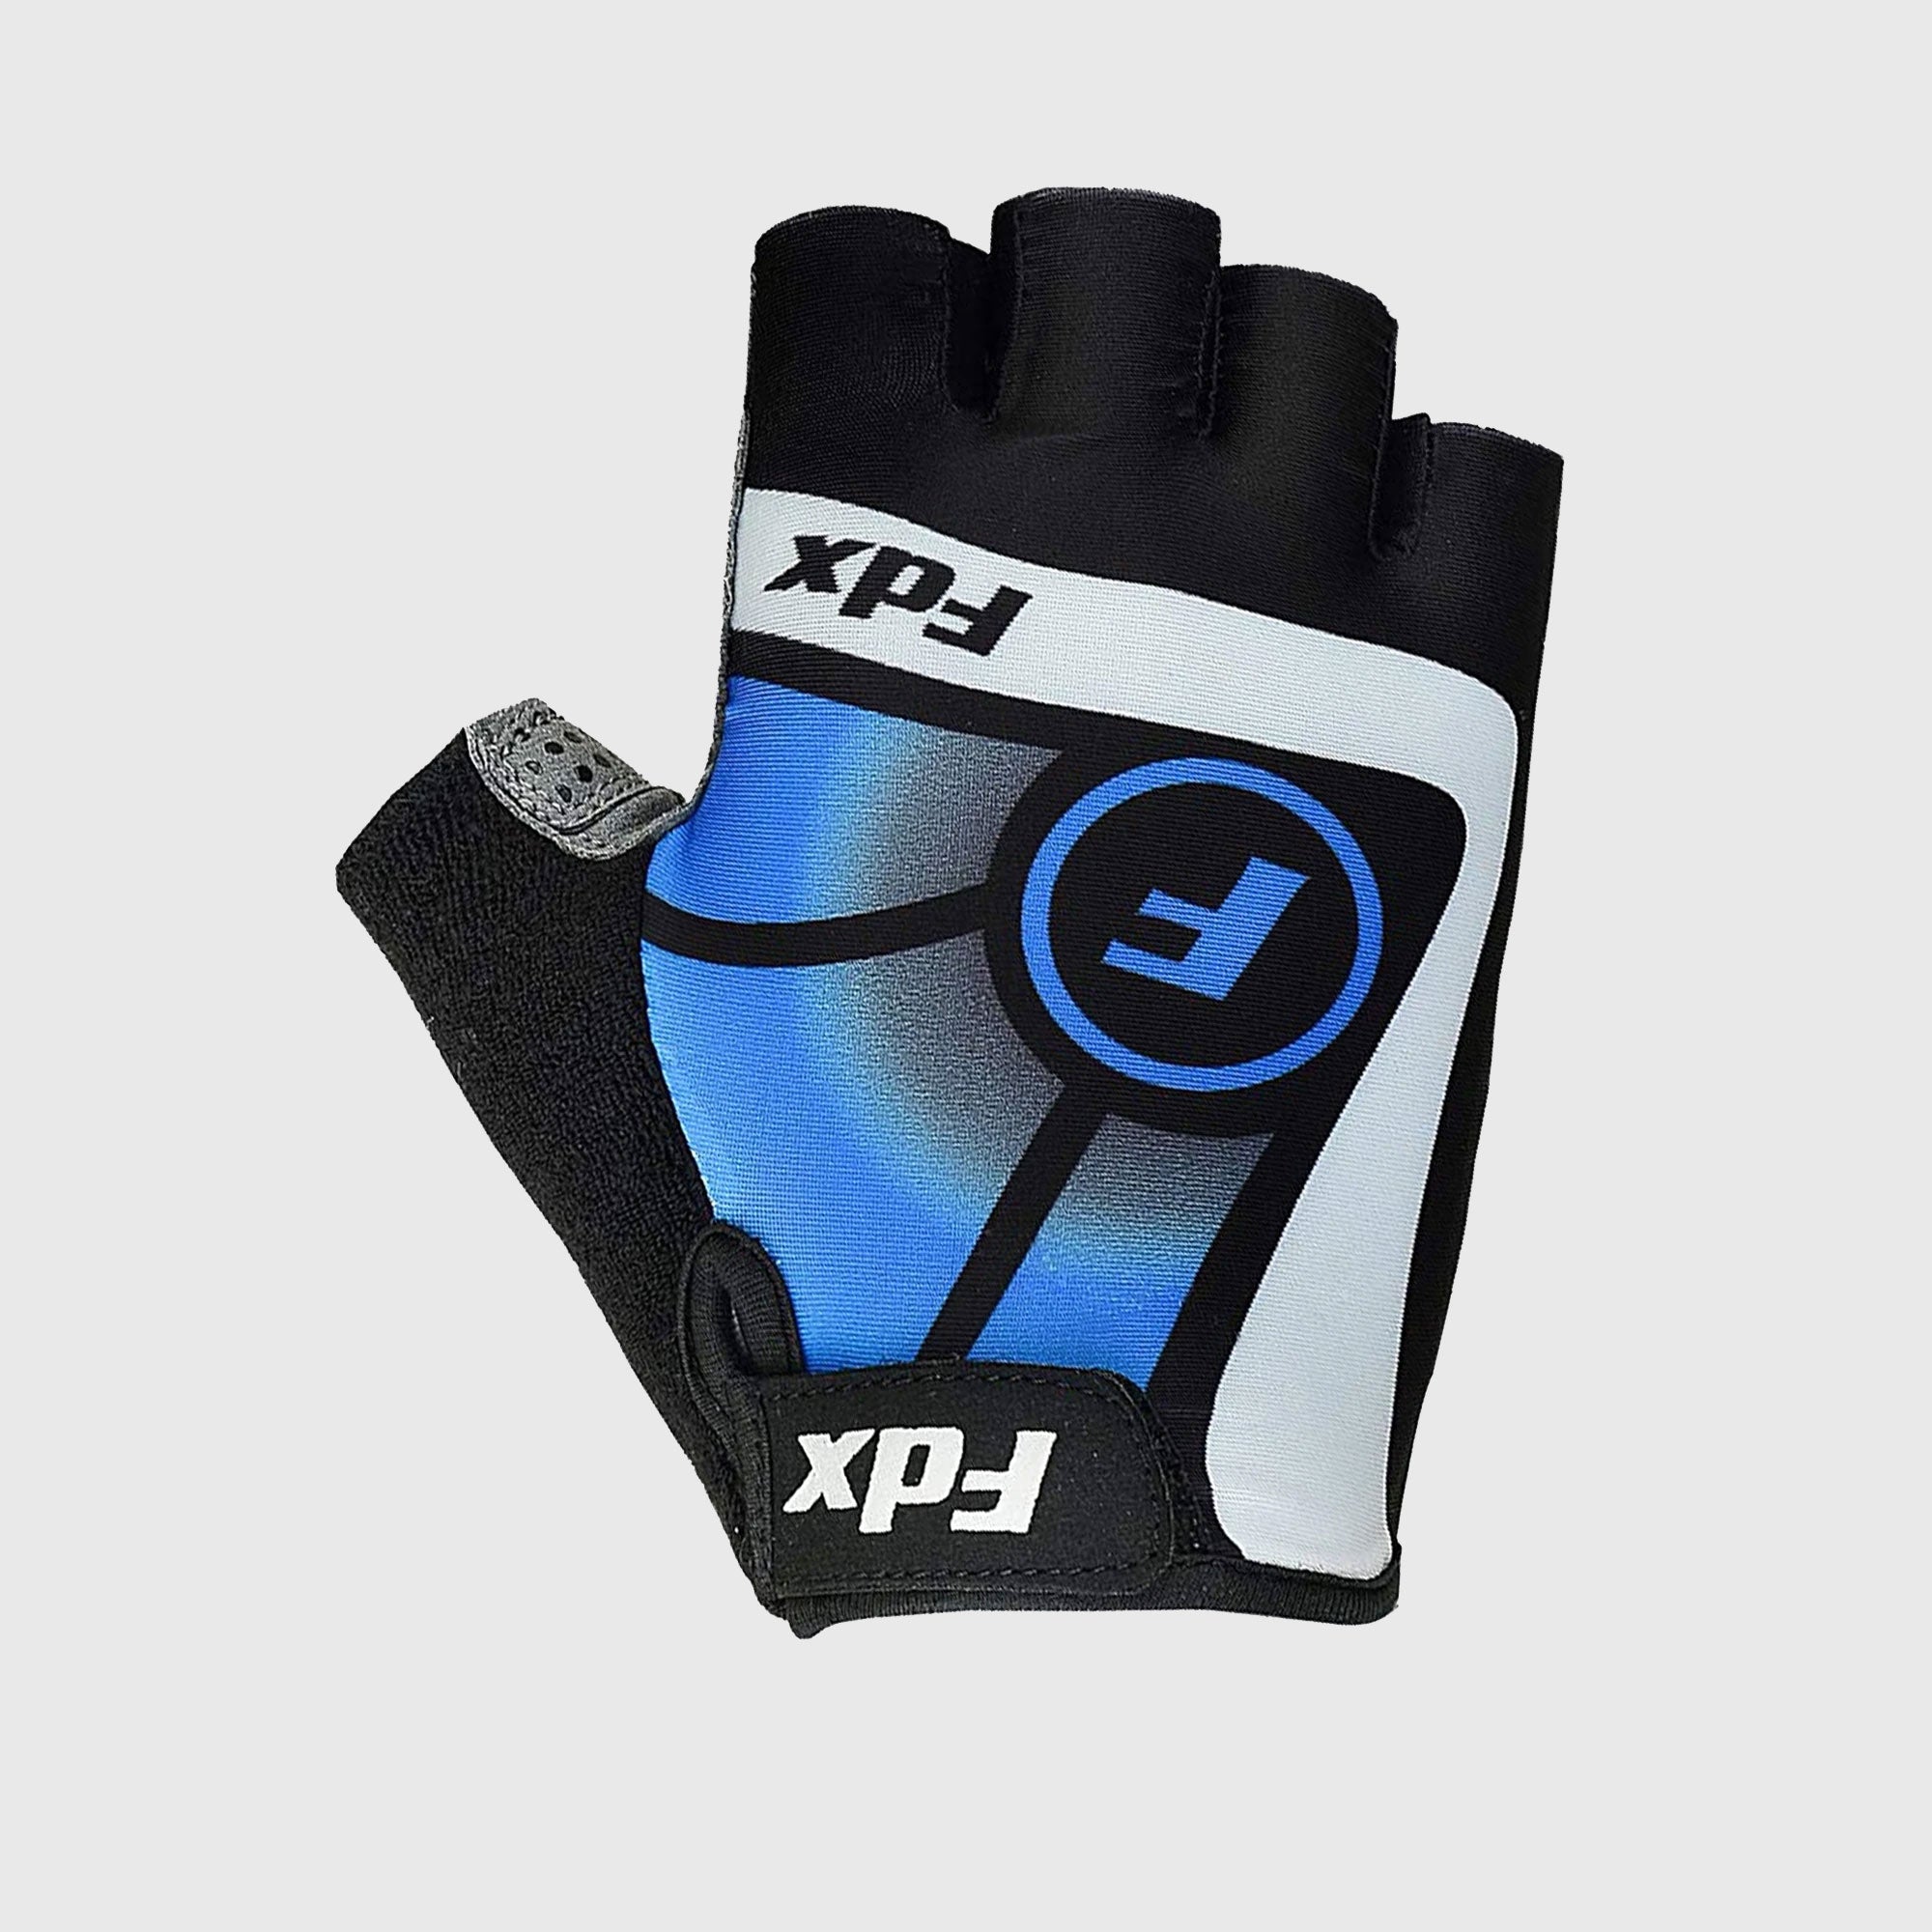 Fdx Black & Blue Short Finger Cycling Gloves for Summer MTB Road Bike fingerless, anti slip & Breathable - Signature